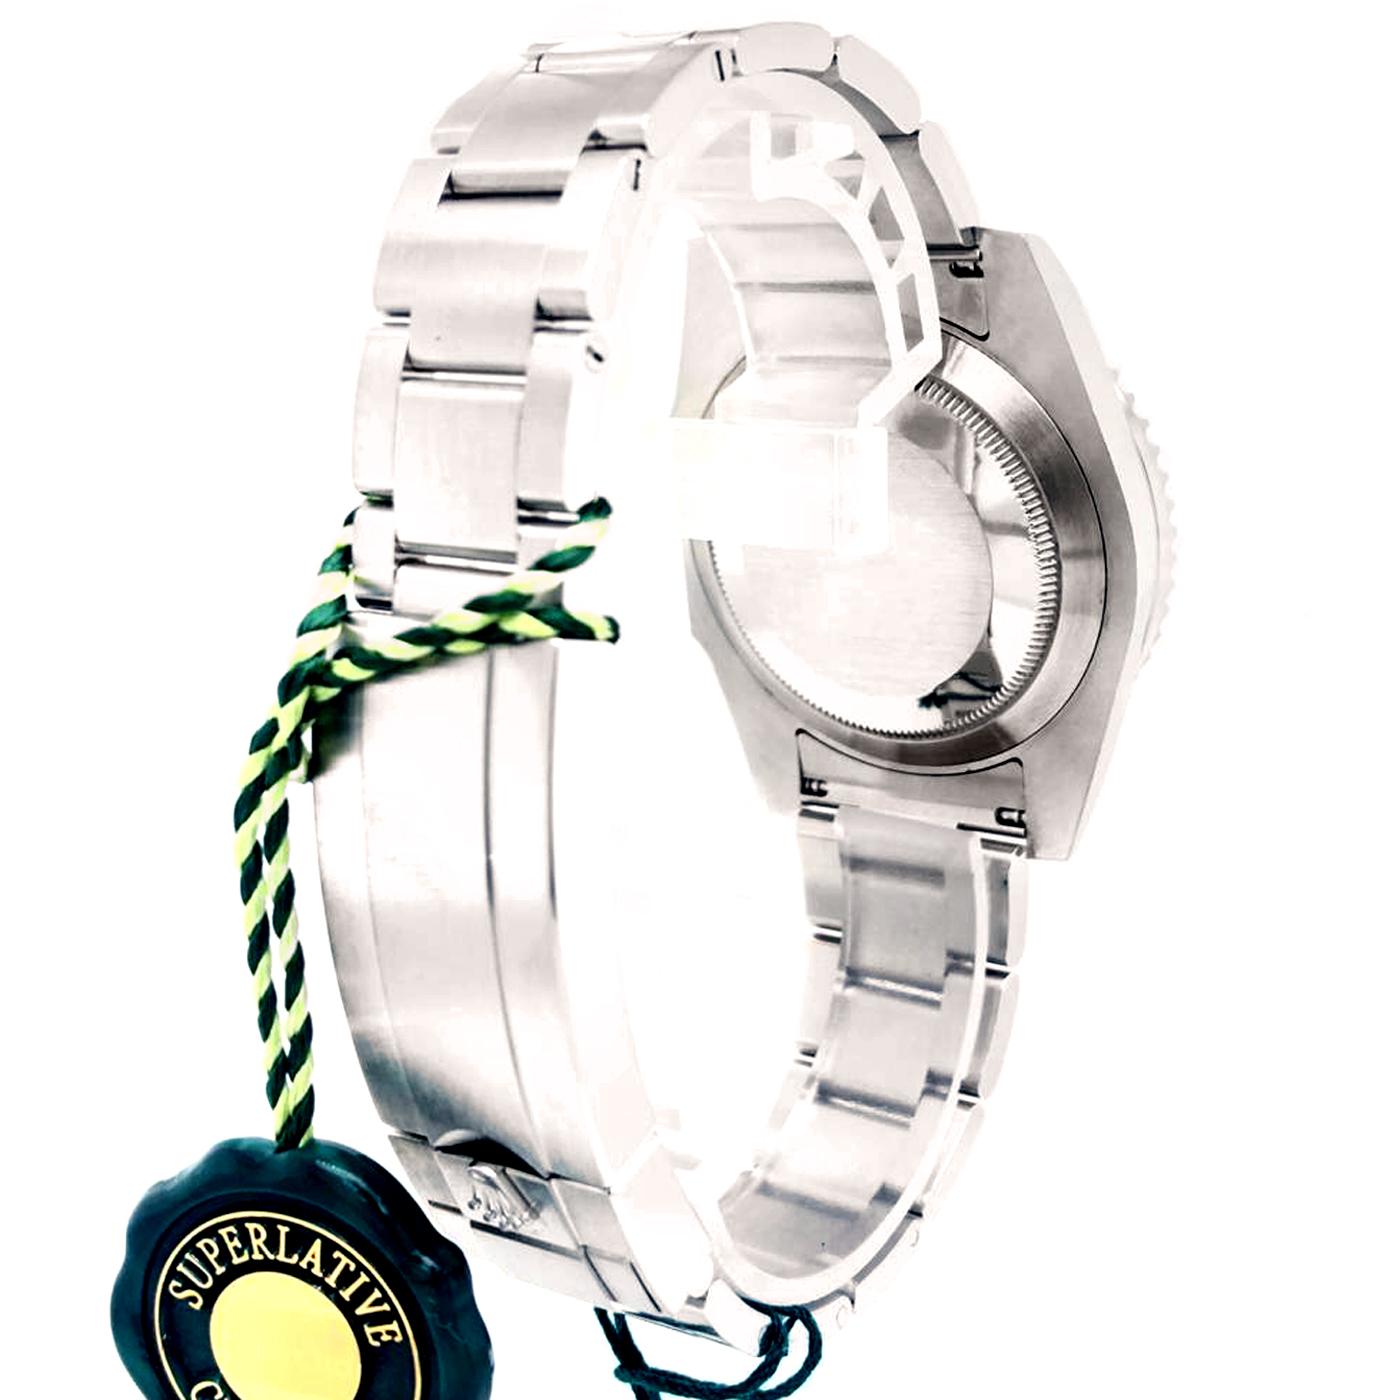 Modernist Rolex Submariner Date Hulk Auto Steel Men's Oyster Bracelet Watch 116610LV